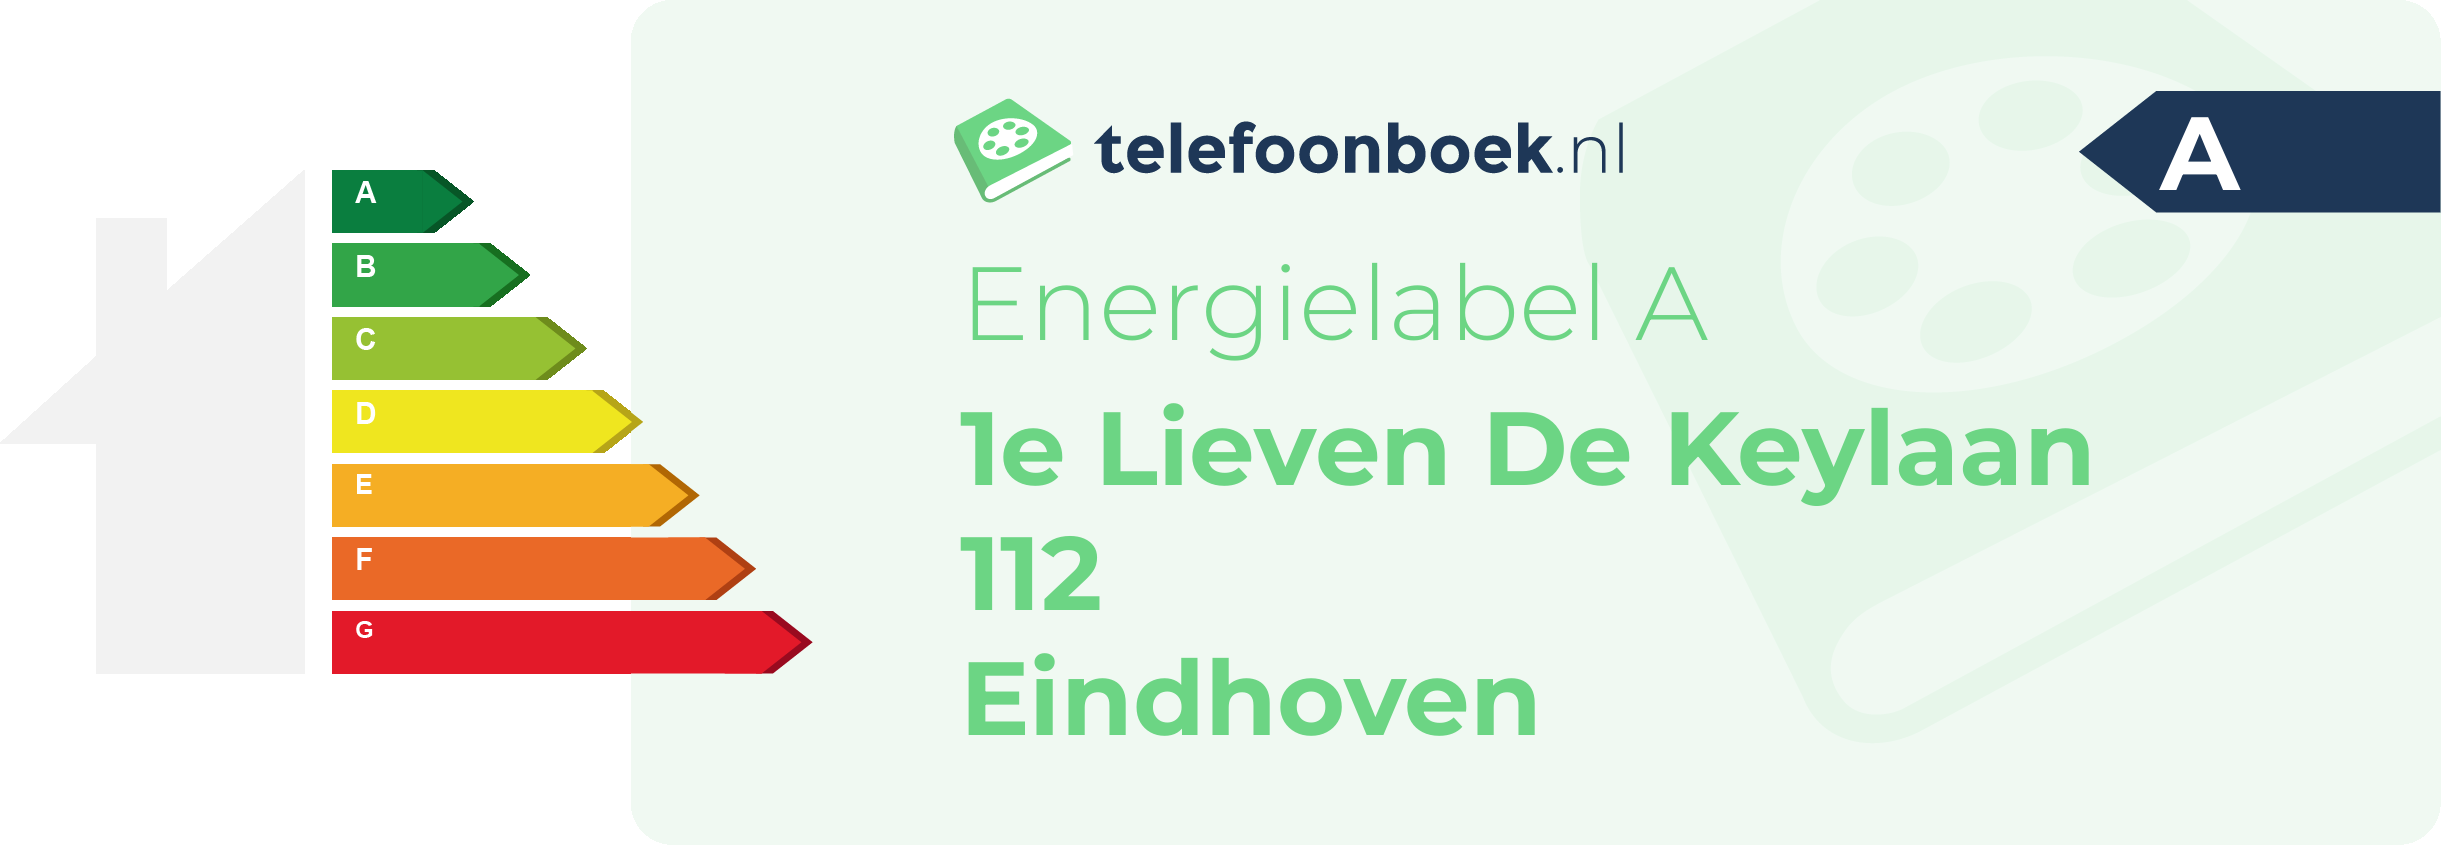 Energielabel 1e Lieven De Keylaan 112 Eindhoven